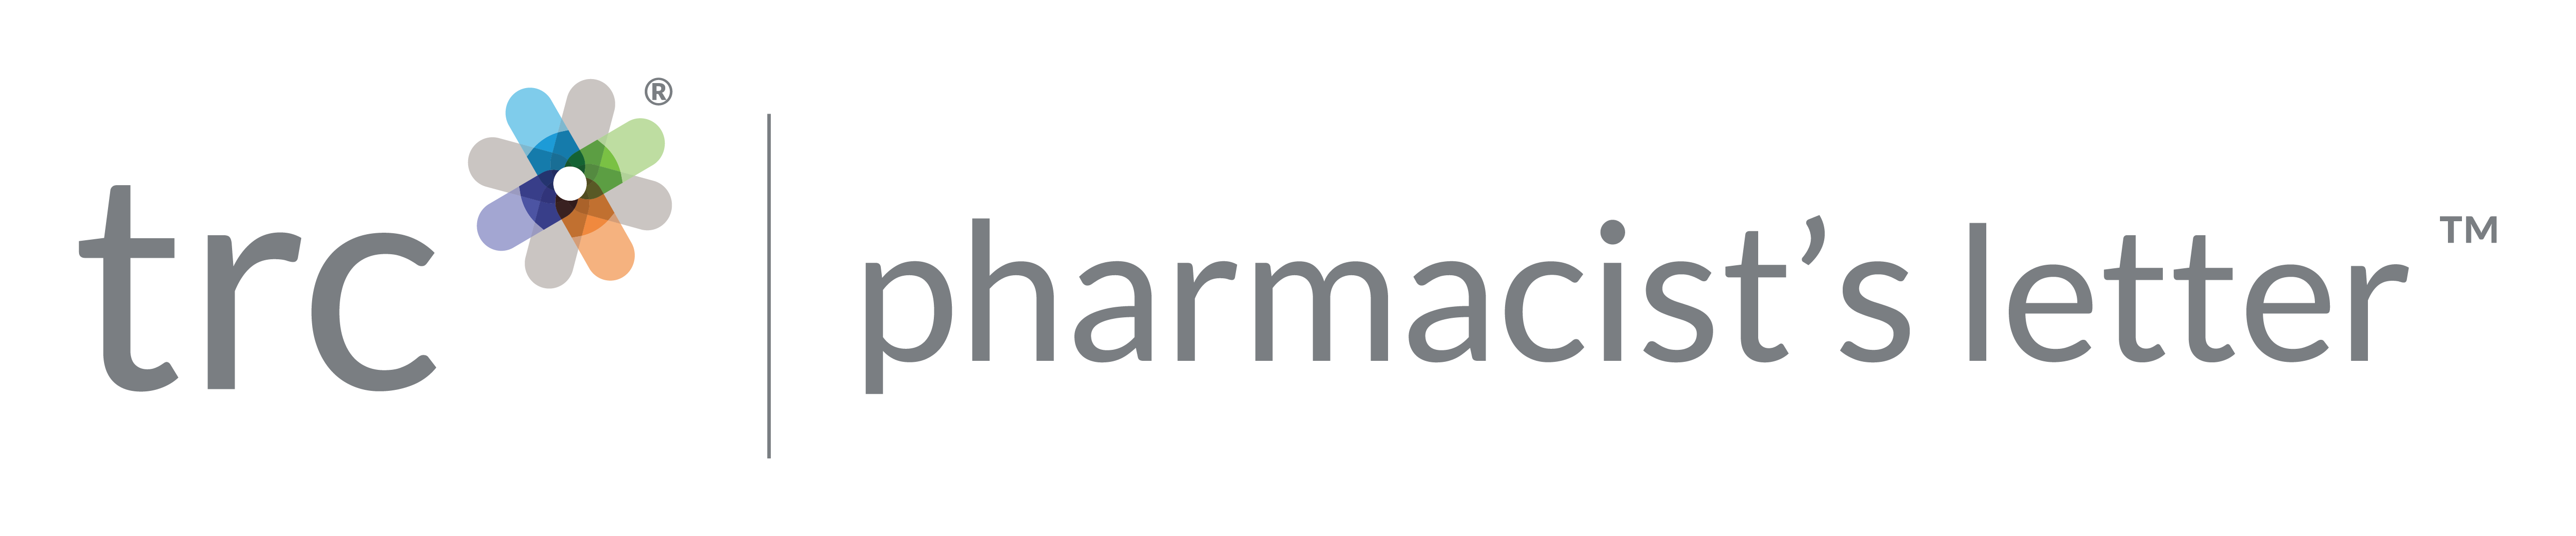 pharmacist-s-letter